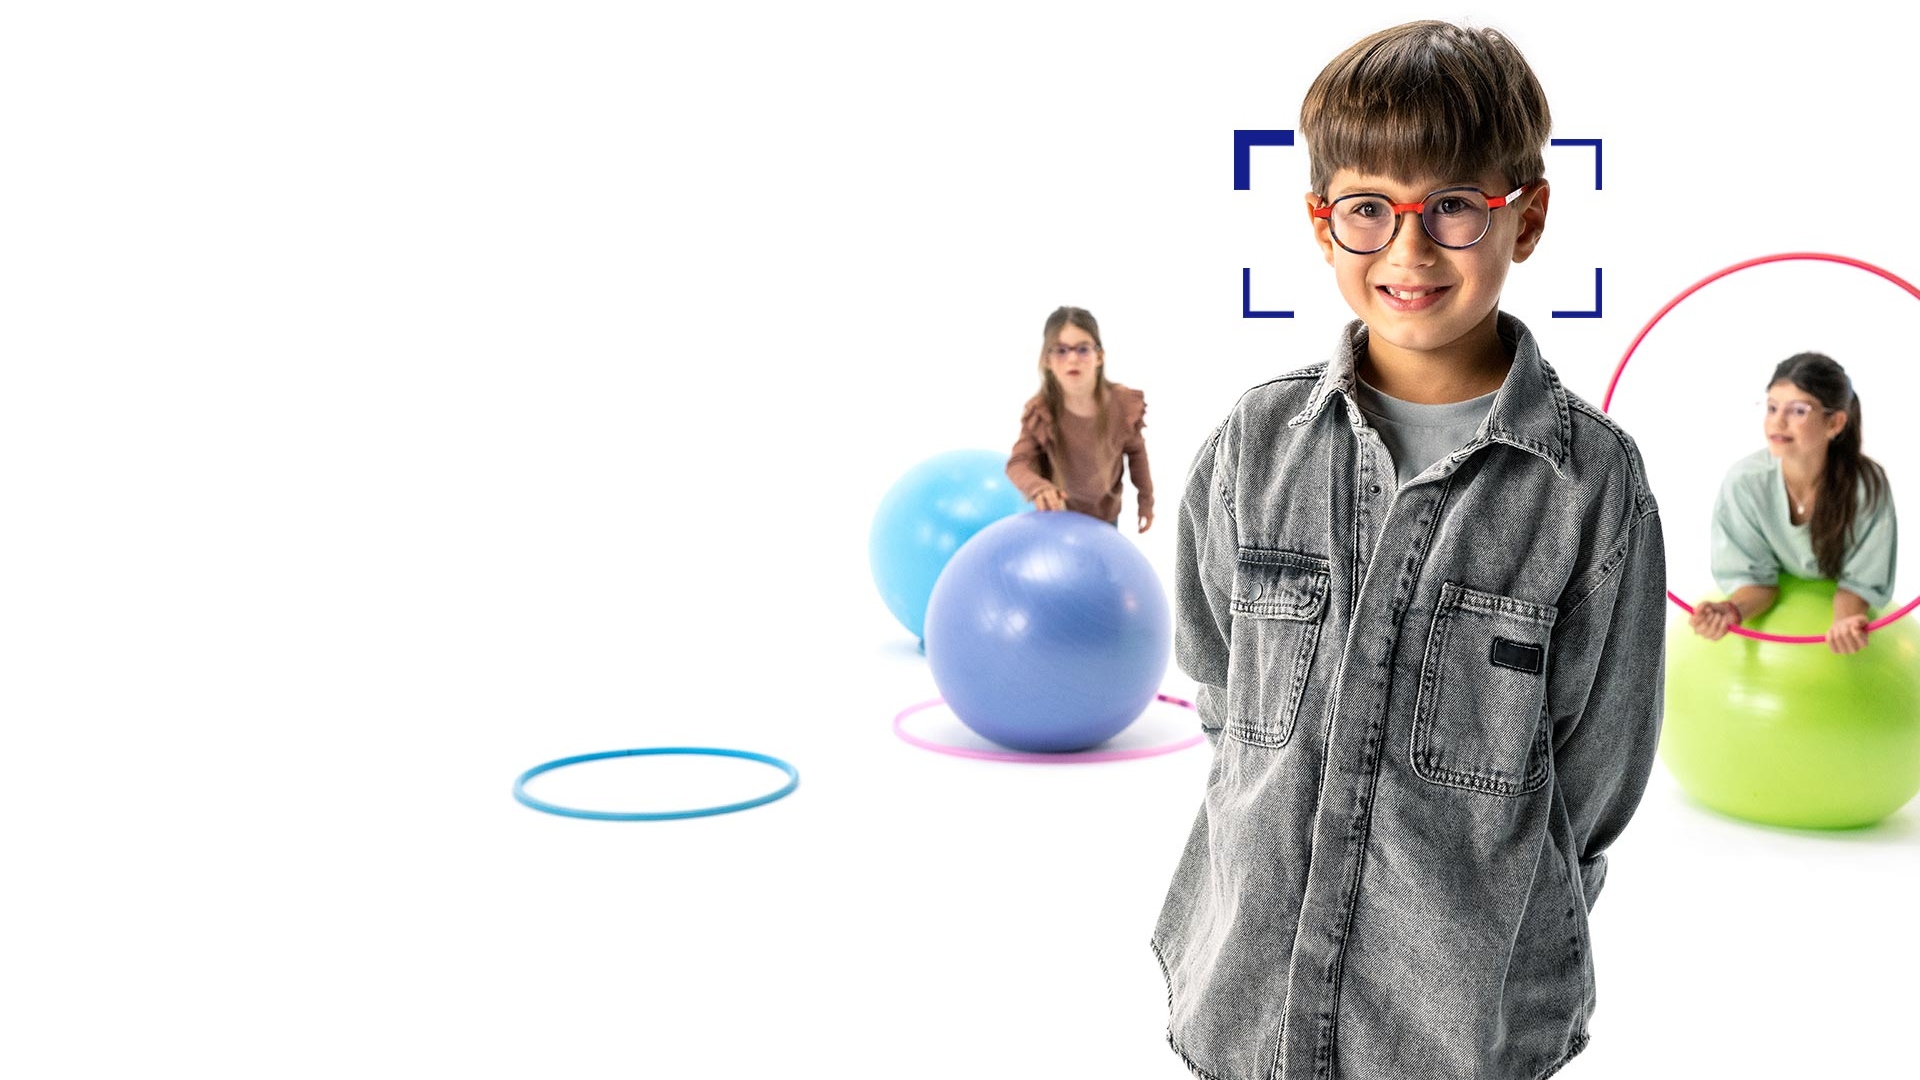 Niño de cabello castaño con gafas redondas de lentes MyoCare de ZEISS se encuentra en primer plano y sonríe a la cámara. Al fondo, dos niñas con lentes MyoCare de ZEISS jugando con aros y pelotas de gimnasia.